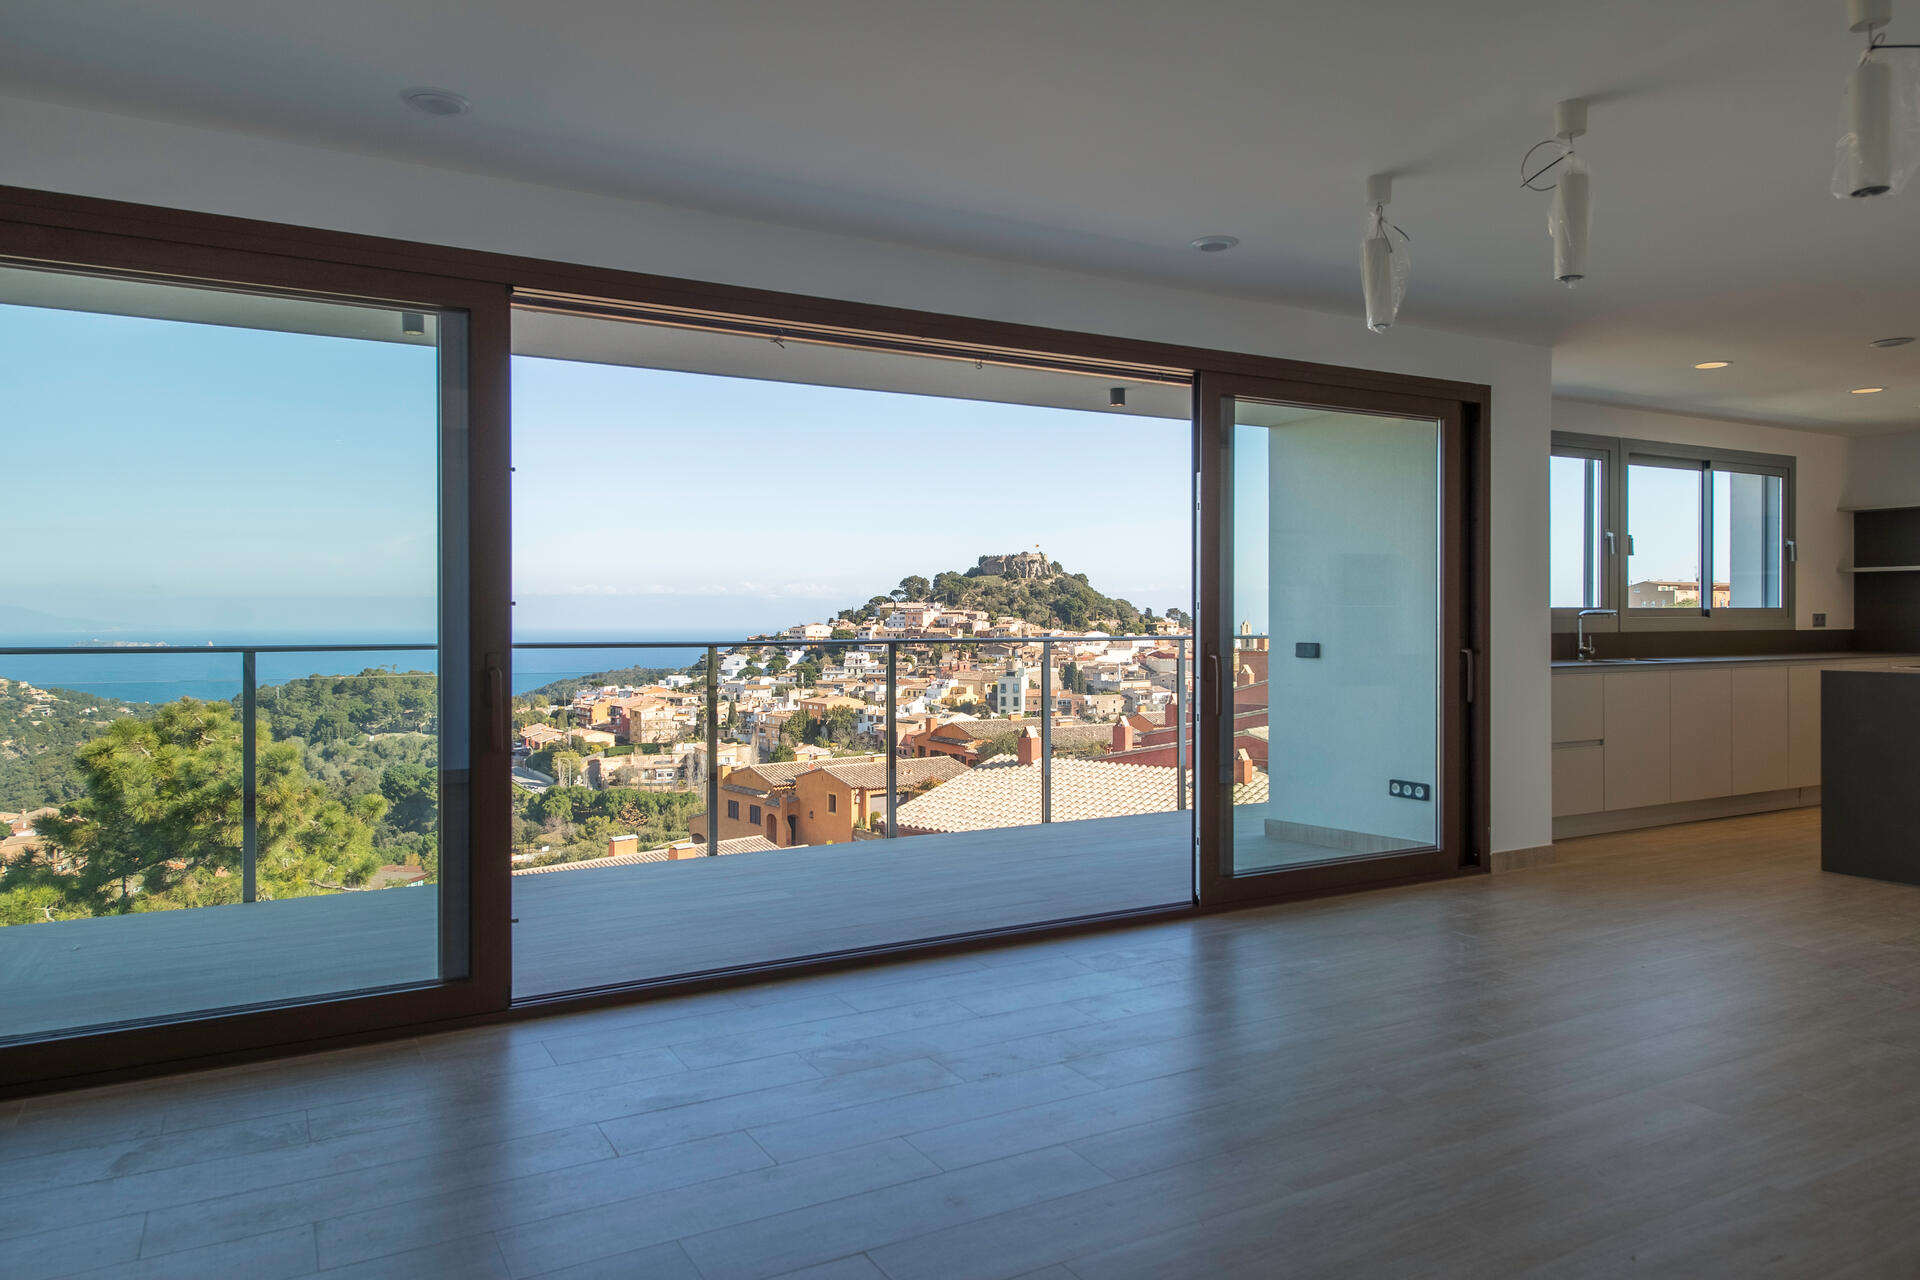 Villas del Sol Costa Brava Aussicht Panorama view Wohnzimmer CG Immobilien - Ihr Traumhaus an der Costa Brava in Spanien nähe Barcelona